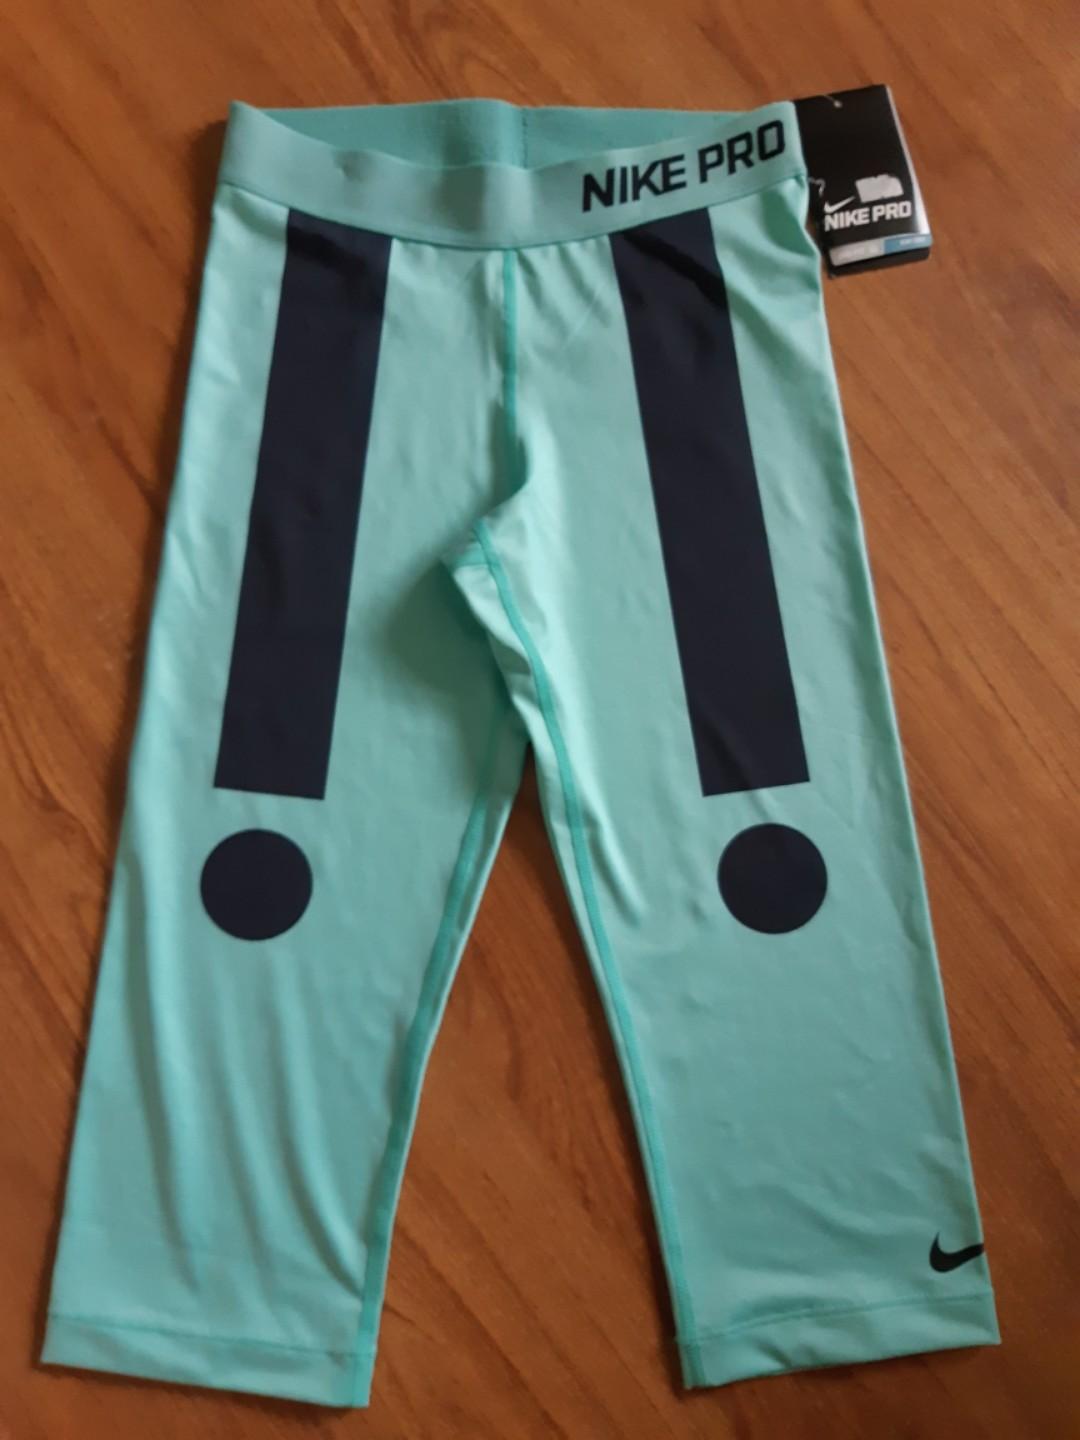 NIKE PRO dri-fit crop leggings in mint 